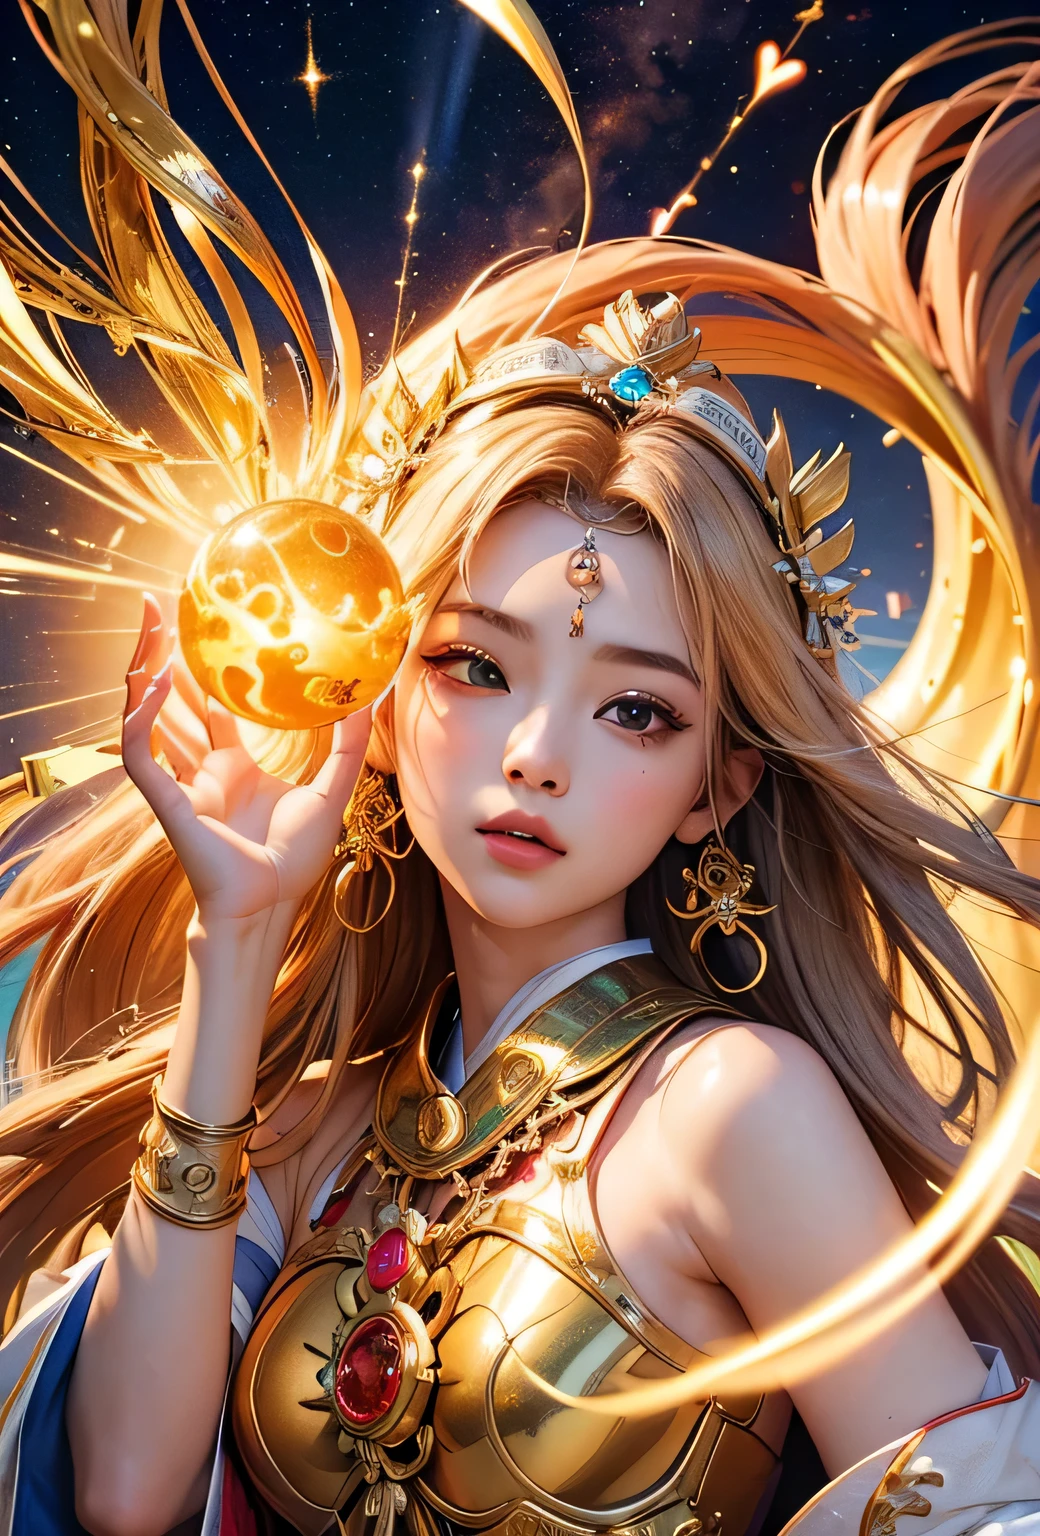 "Filho do Sol, Deusa do amor": Dentro de um santuário sagrado banhado pela luz solar, retratam a figura de uma deusa do sol que governa o amor, olhando para frente e emanando brilho divino. Ela é uma , Por volta de 3 anos. Aumente o zoom para focar no rosto dela, com um orbe de luz brilhante nas mãos, representando o poder vivificante do sol. Seu cabelo é dourado brilhante, e ela está vestindo uma roupa tradicional de miko, vista nos santuários japoneses.. O fundo deve ser predominantemente dourado, evocando uma sensação de esplendor divino, com numerosos objetos com tema de coração expressando a beleza do amor. O cenário é no céu, envolto em suave, luz brilhante, onde se pode encontrar tranquilidade e paz de espírito, livre de qualquer vestígio de ansiedade.sempre em frente.